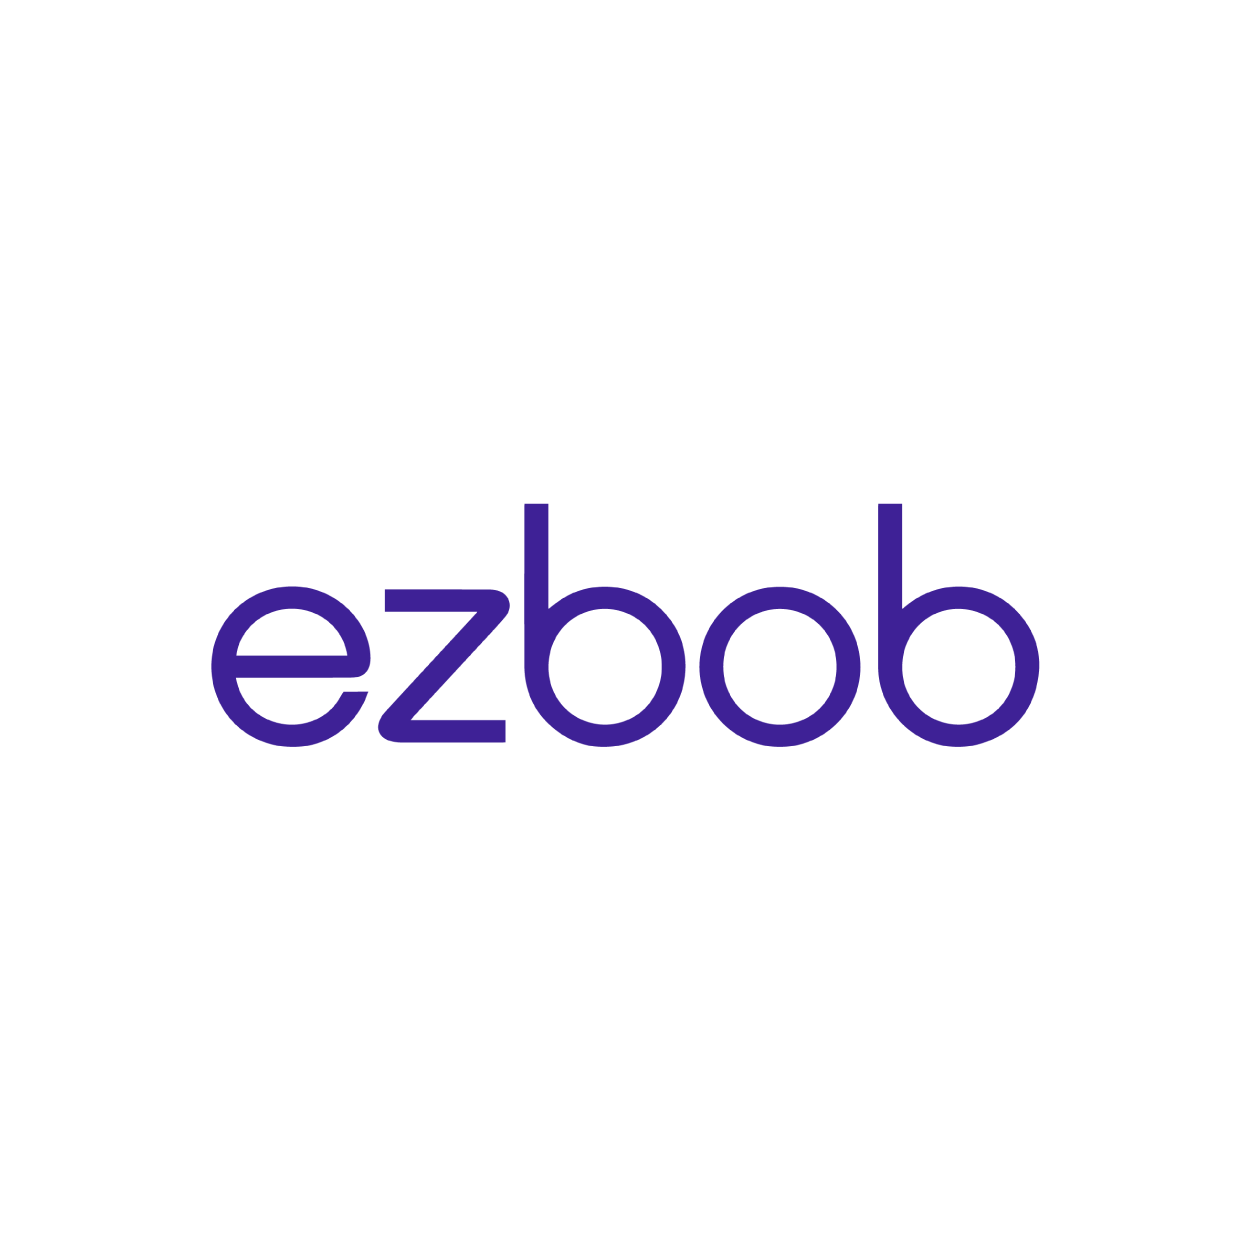 Ezbob logo